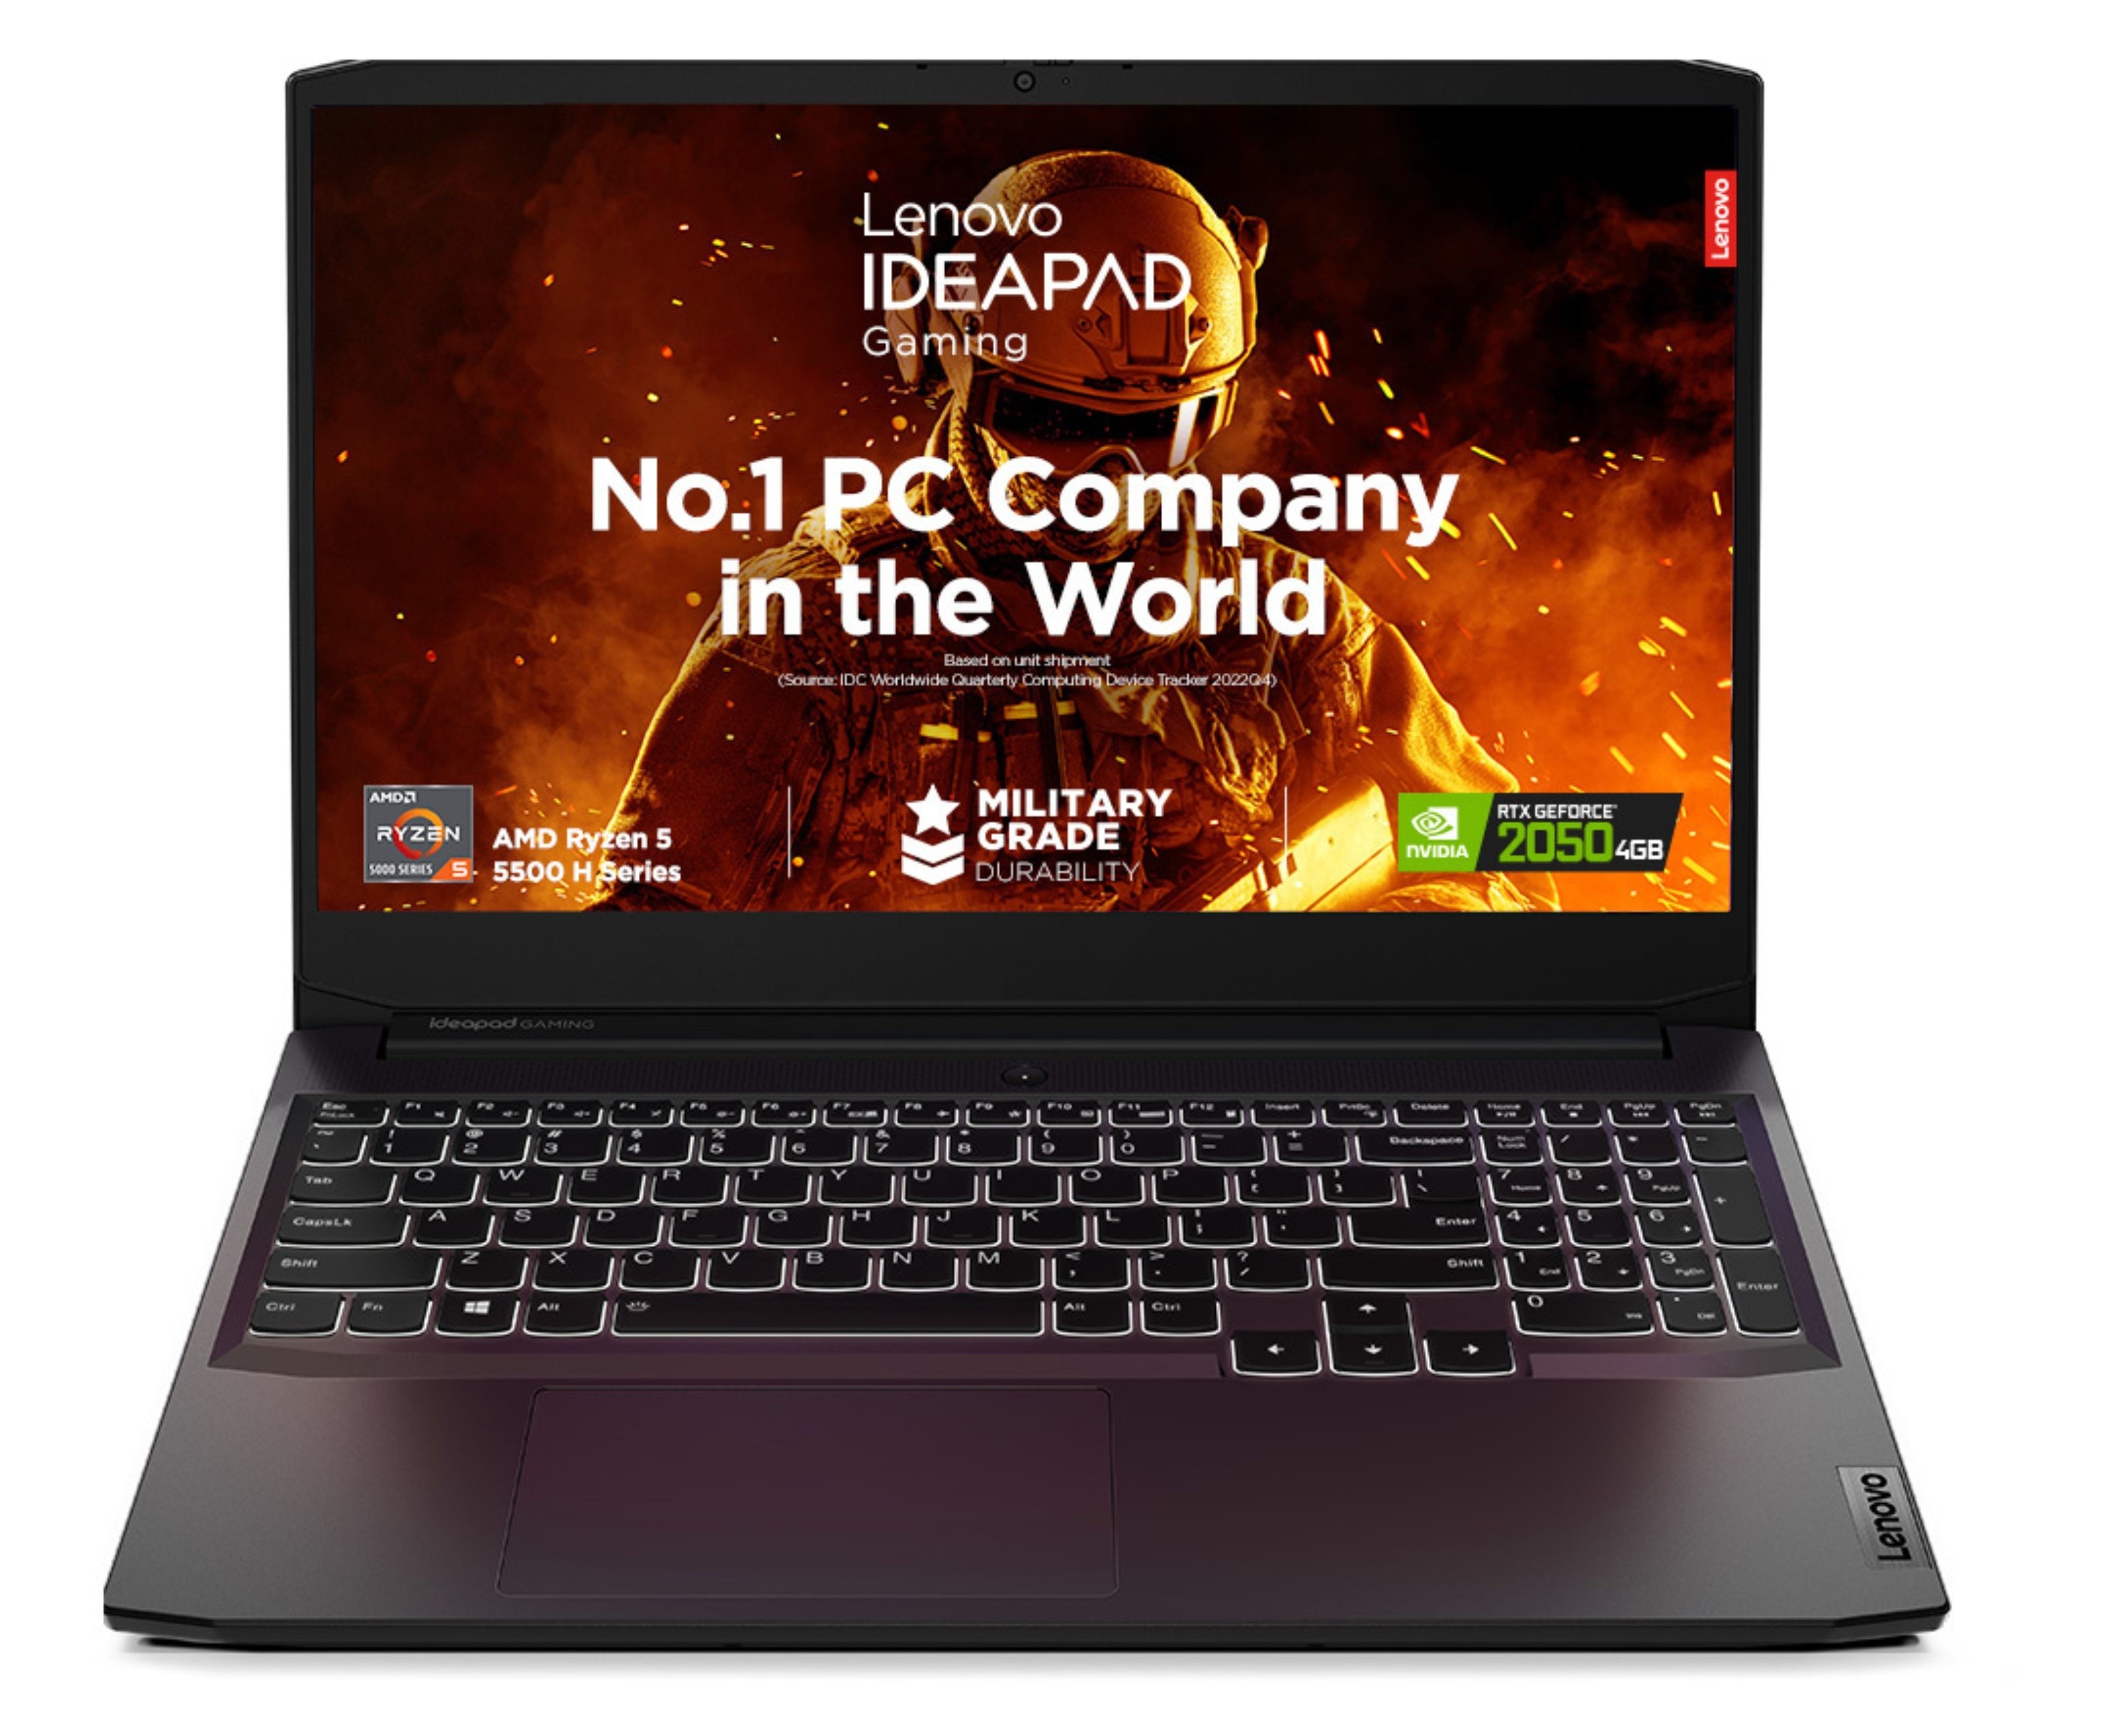 IdeaPad Gaming 3 Gen 6, 39.62cms - AMD R5 (Shadow Black)